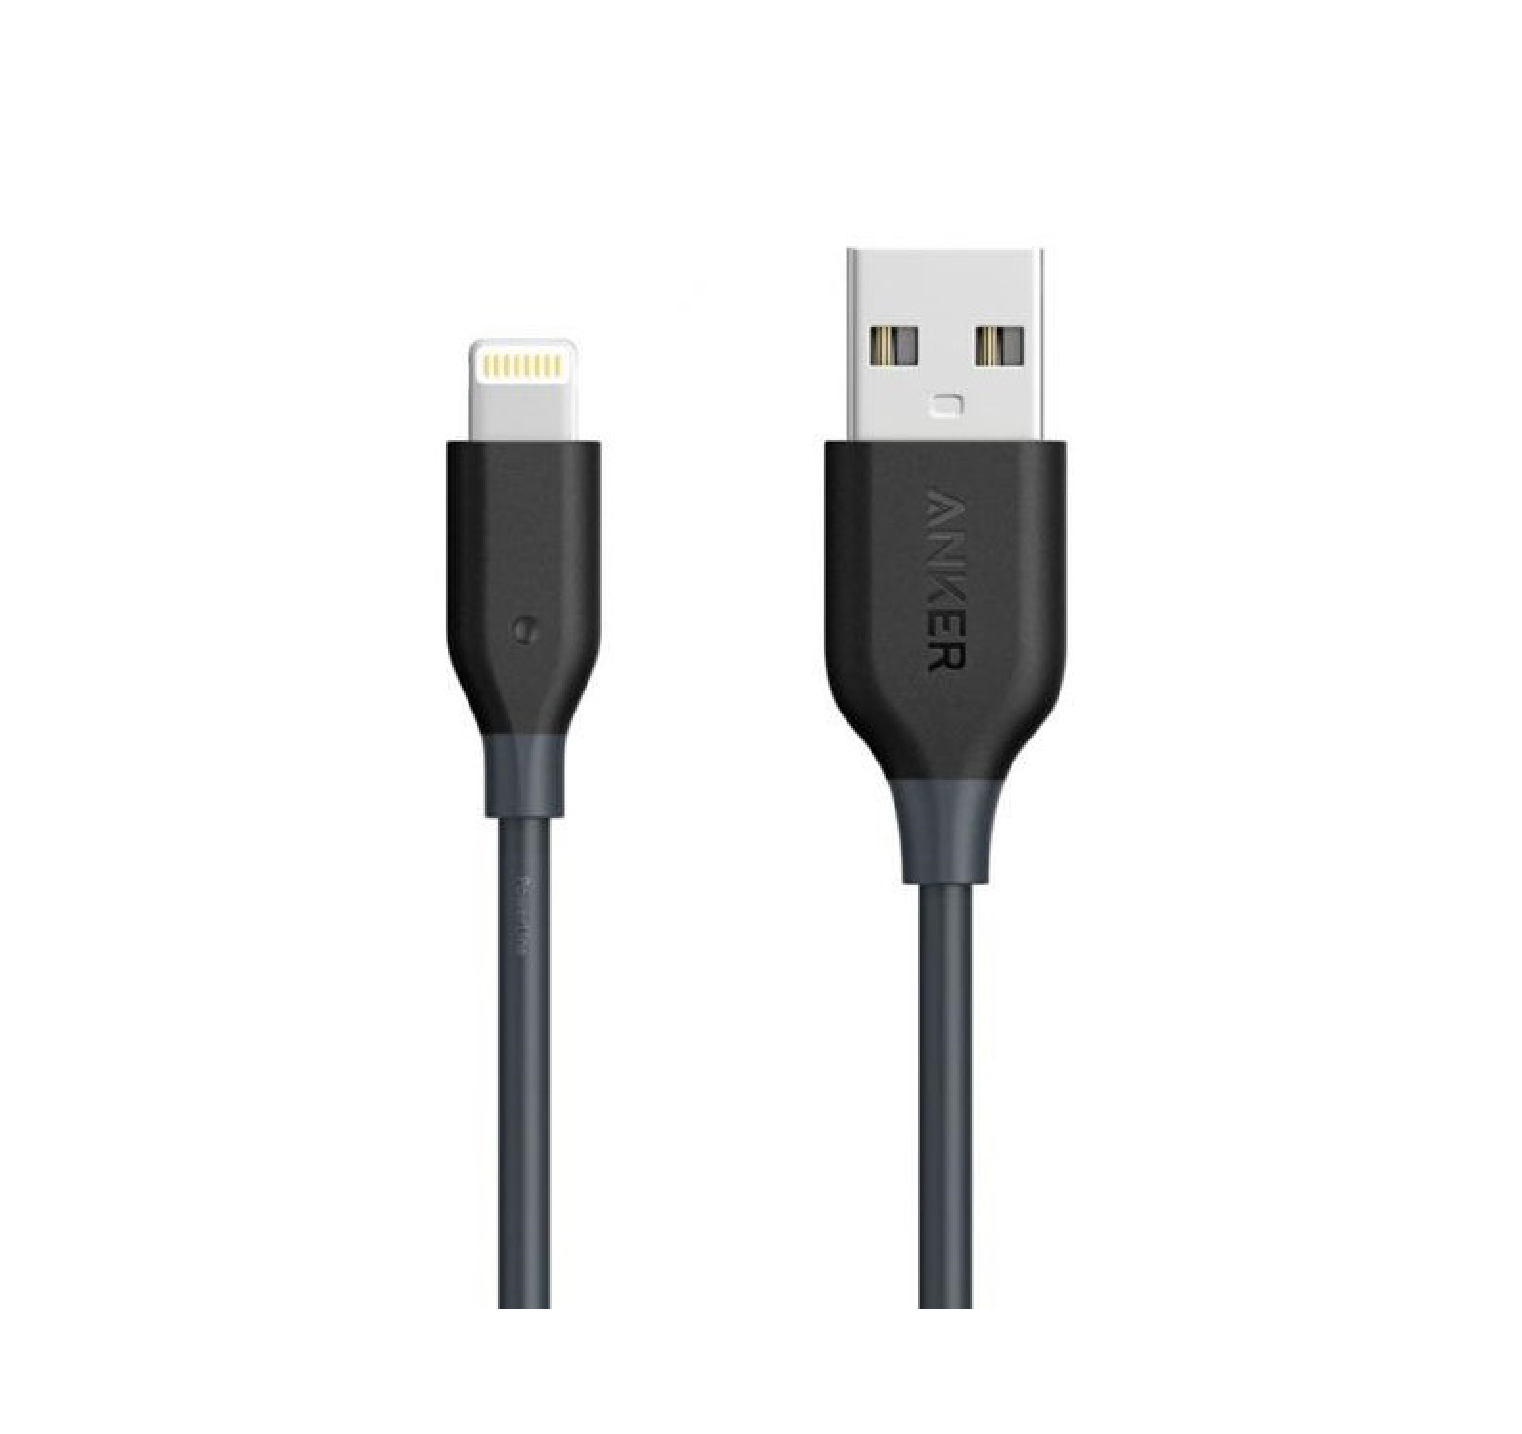 کابل تبدیل USB به لایتنینگ انکر مدل A8012 طول 0.9 متر thumb 306